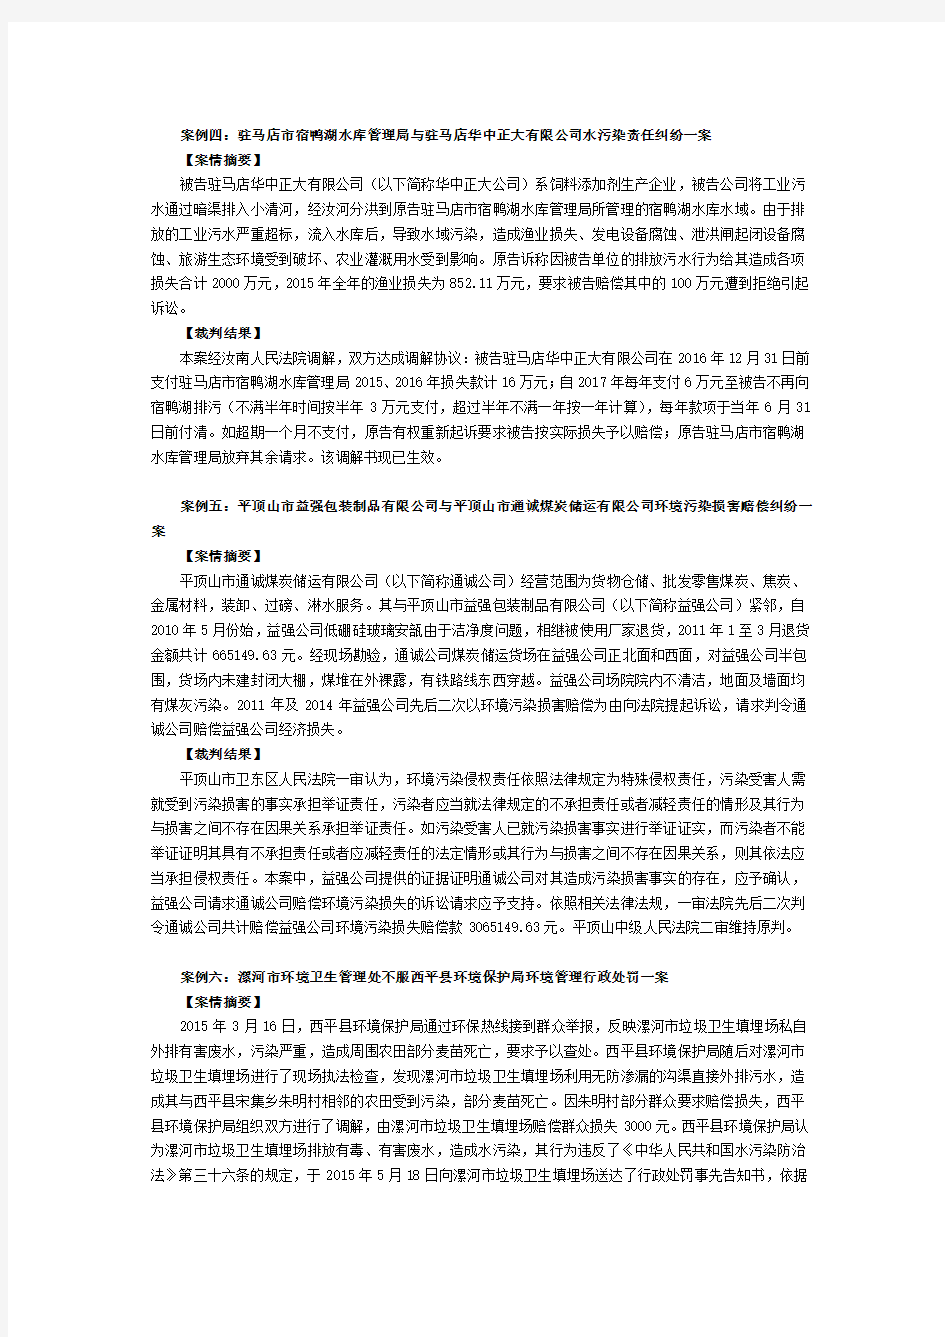 2017.8.1快讯-河南省高级人民法院发布环境资源审判第二批七大典型案例